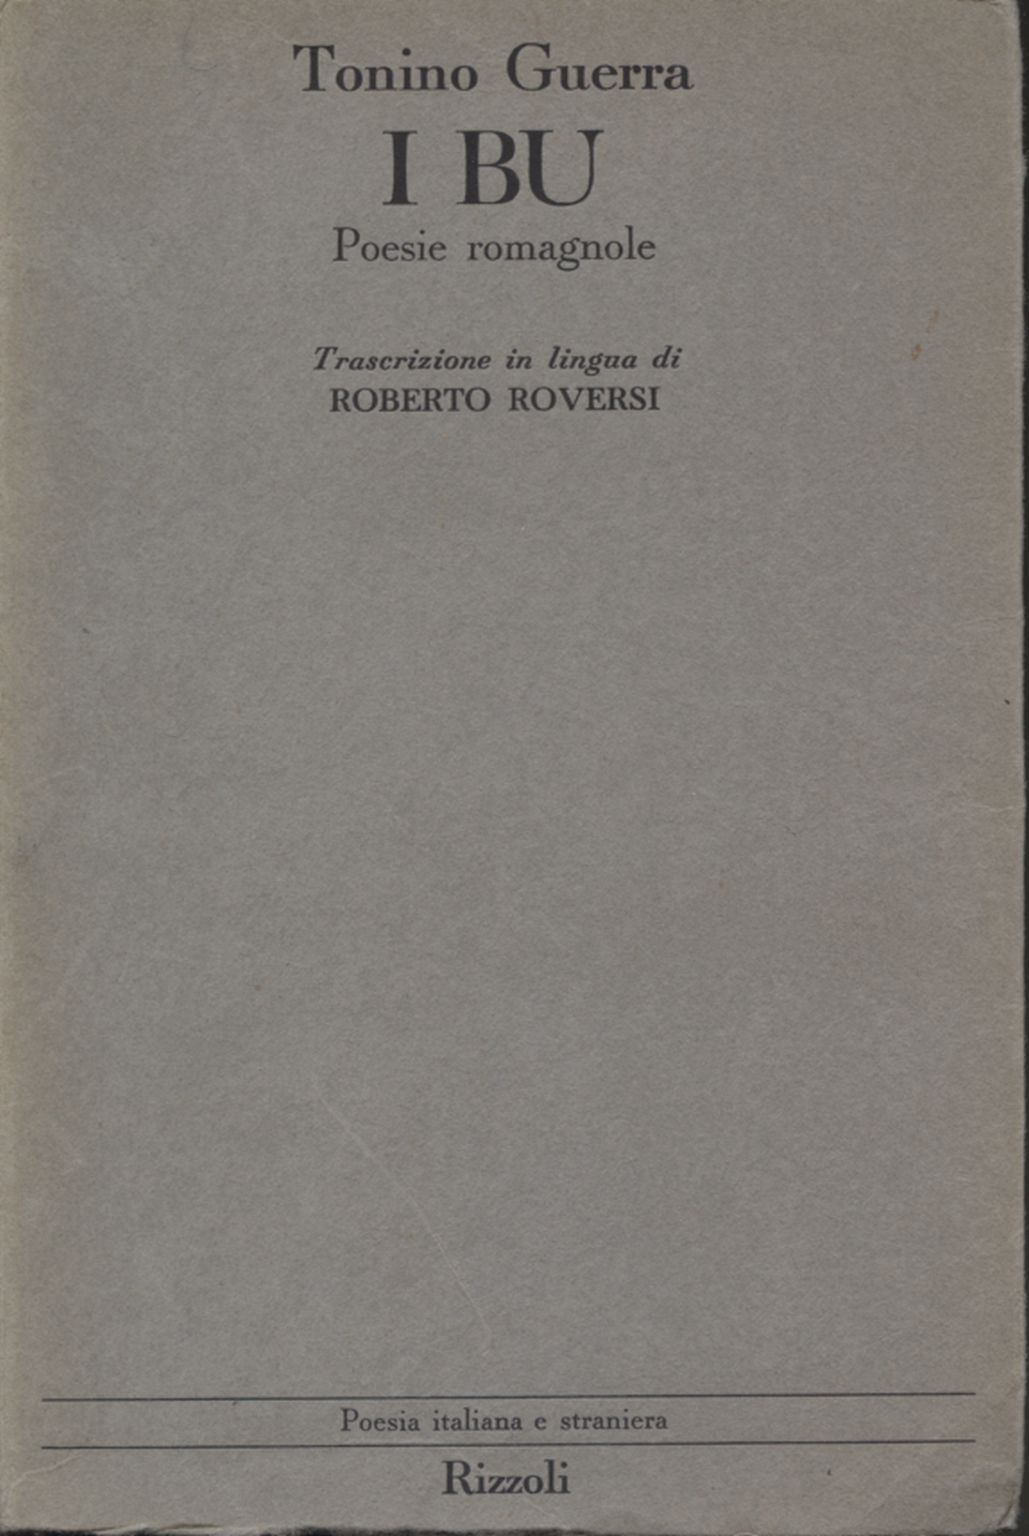 The Bu: poems of romagna, Tonino Guerra